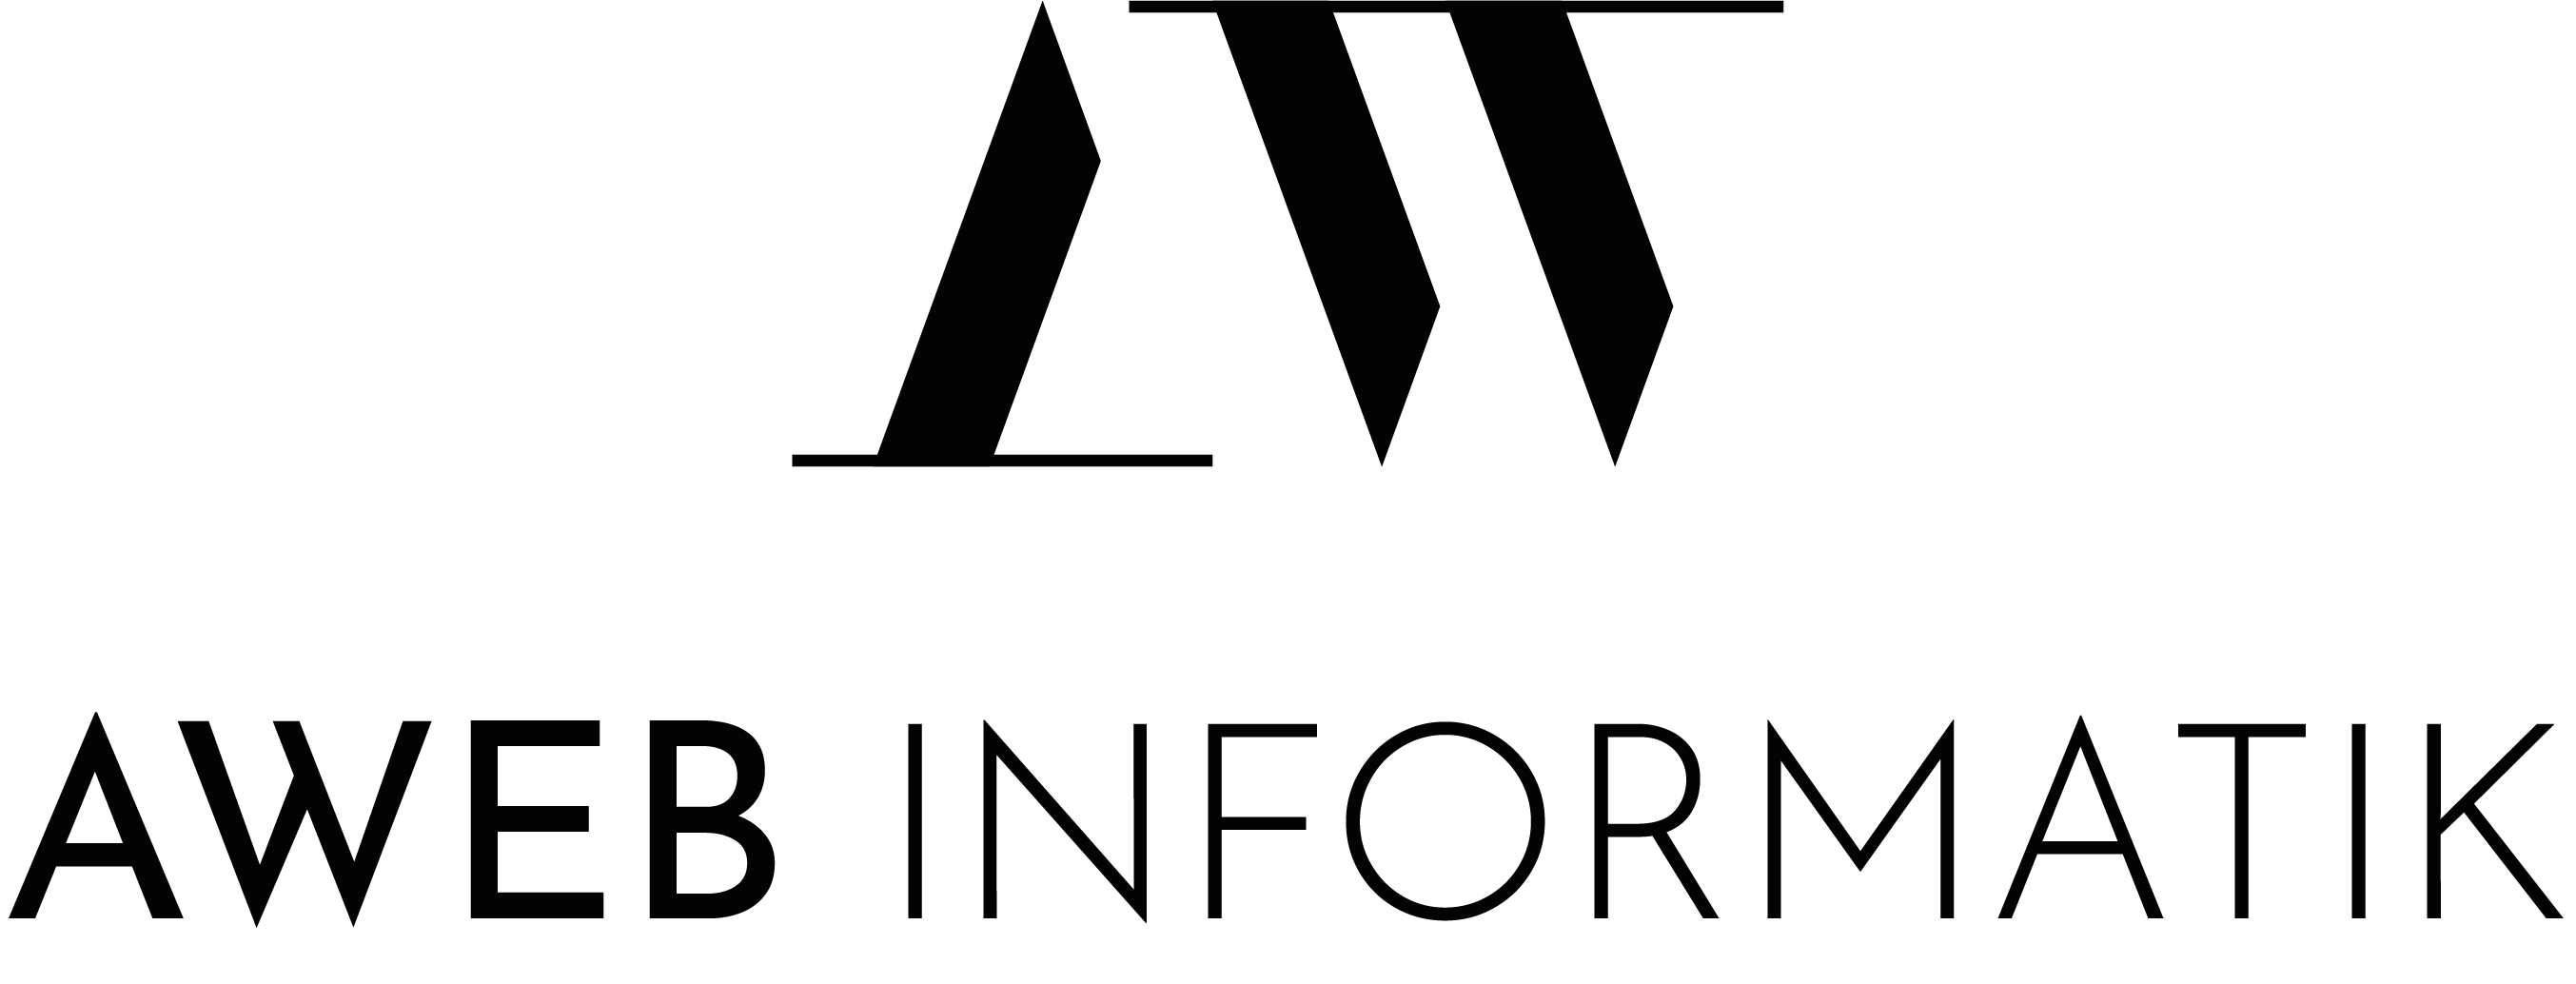 Logo von AWeb Informatik, bestehend aus stilisierten Buchstaben 'AW' über dem Schriftzug 'AWeb Informatik'.